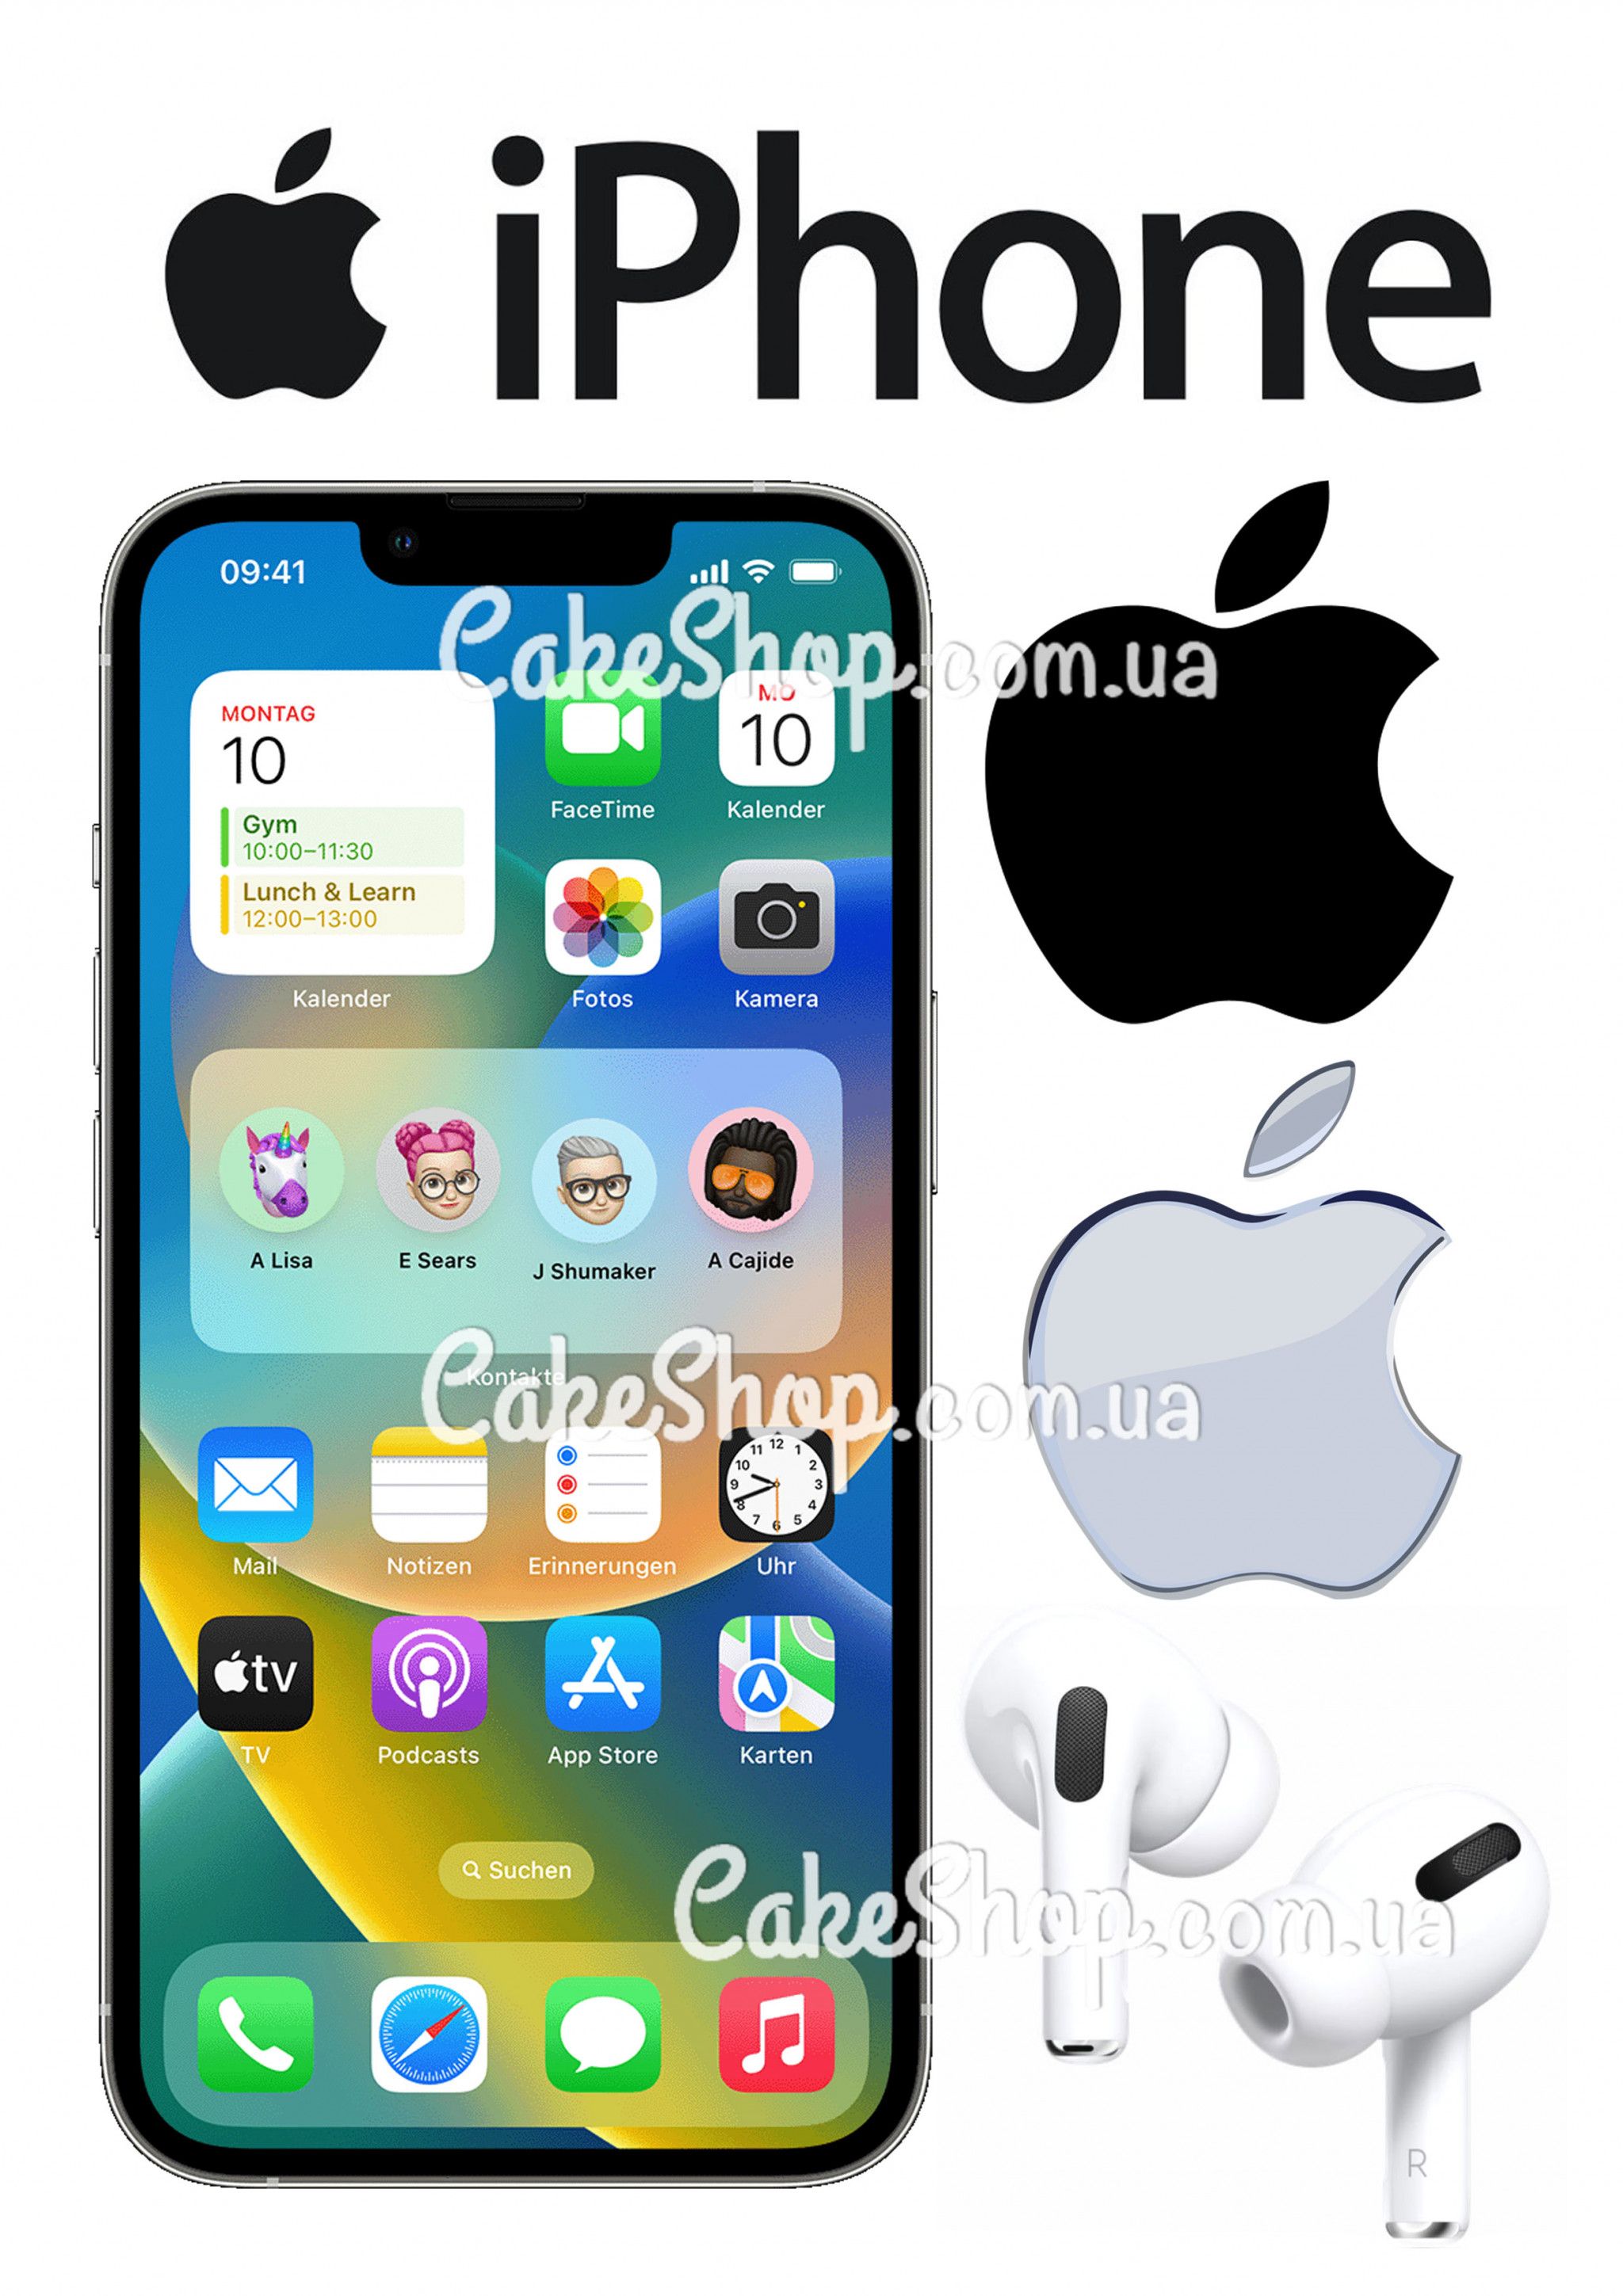 ⋗ Вафельная картинка Iphone купить в Украине ➛ CakeShop.com.ua, фото